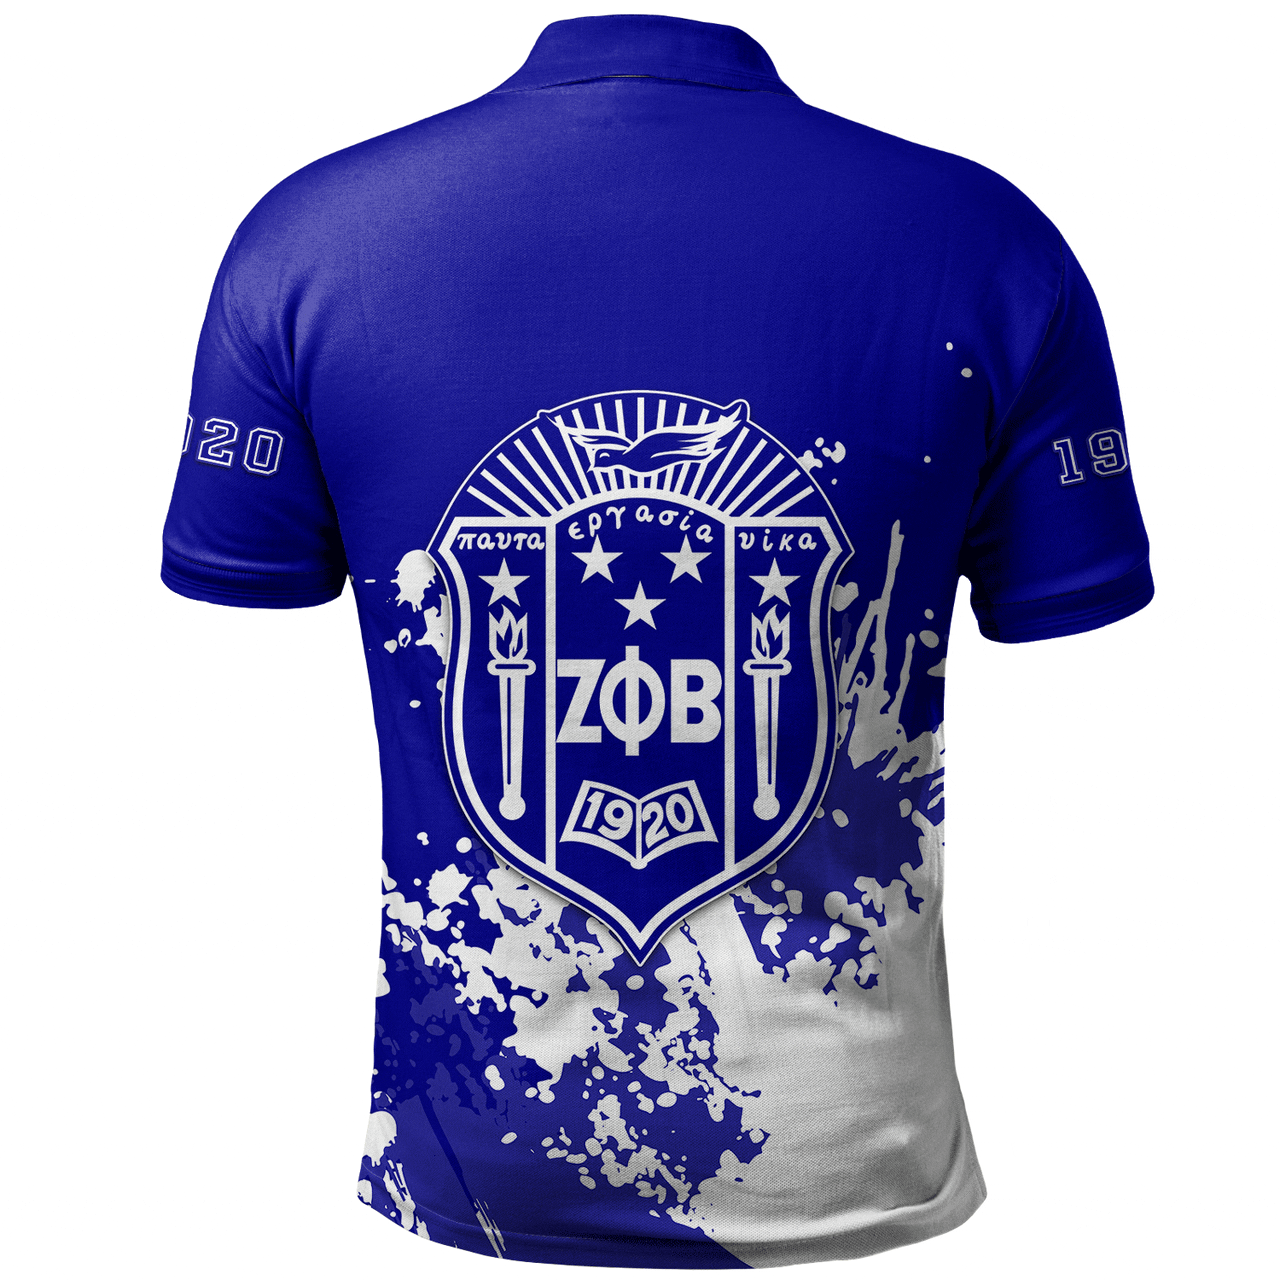 Zeta Phi Beta Polo Shirt Spanit Style